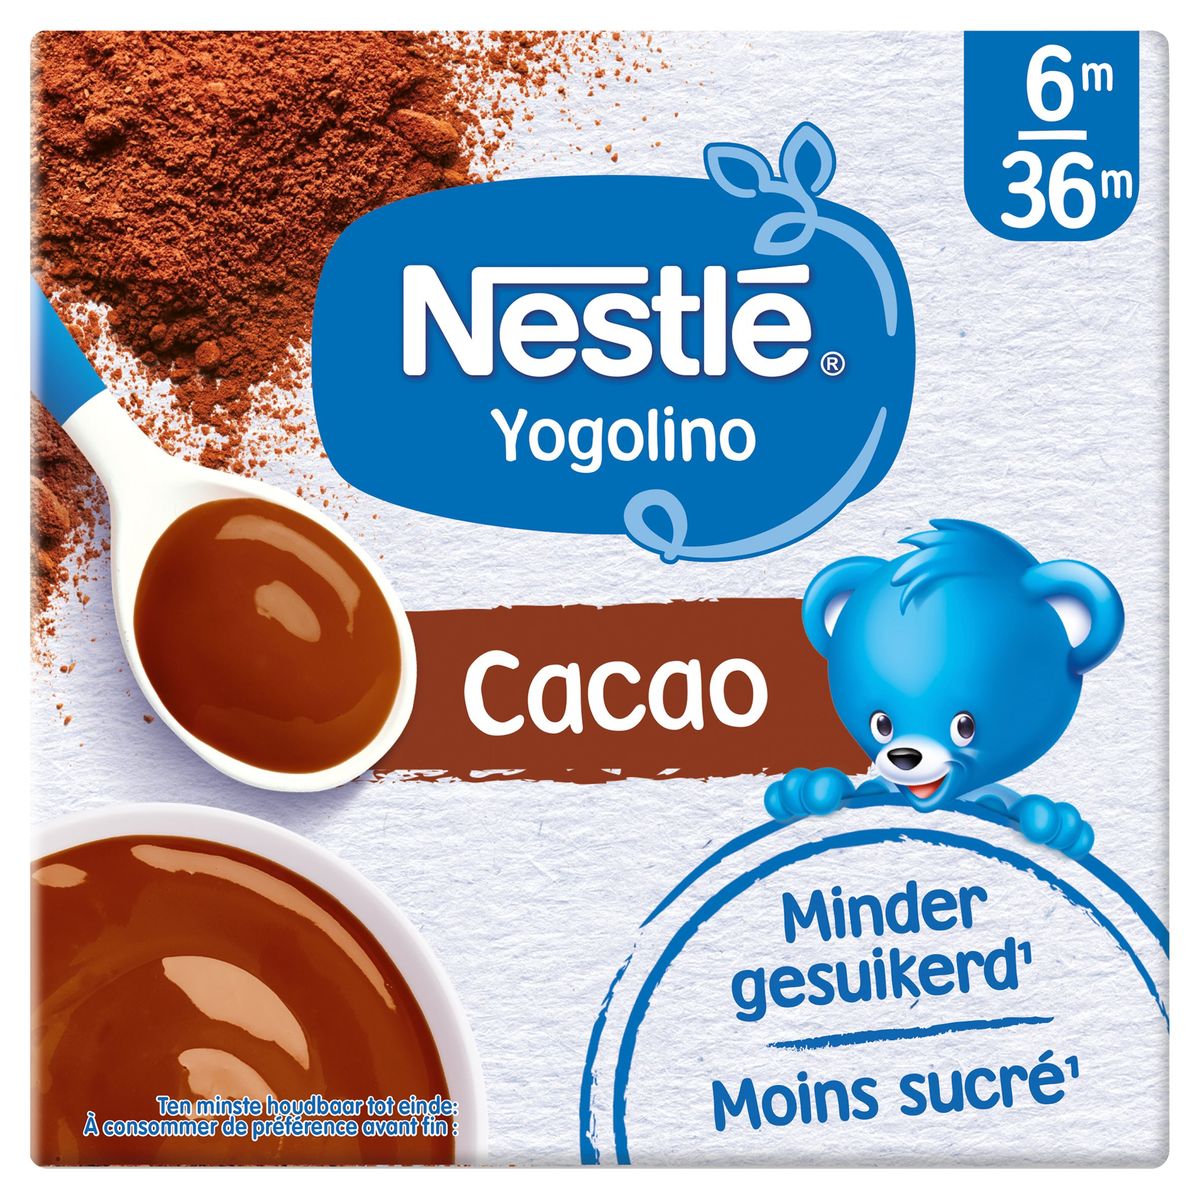 Nestlé Yogolino Laitage Cacao dès 6 mois 4x100g